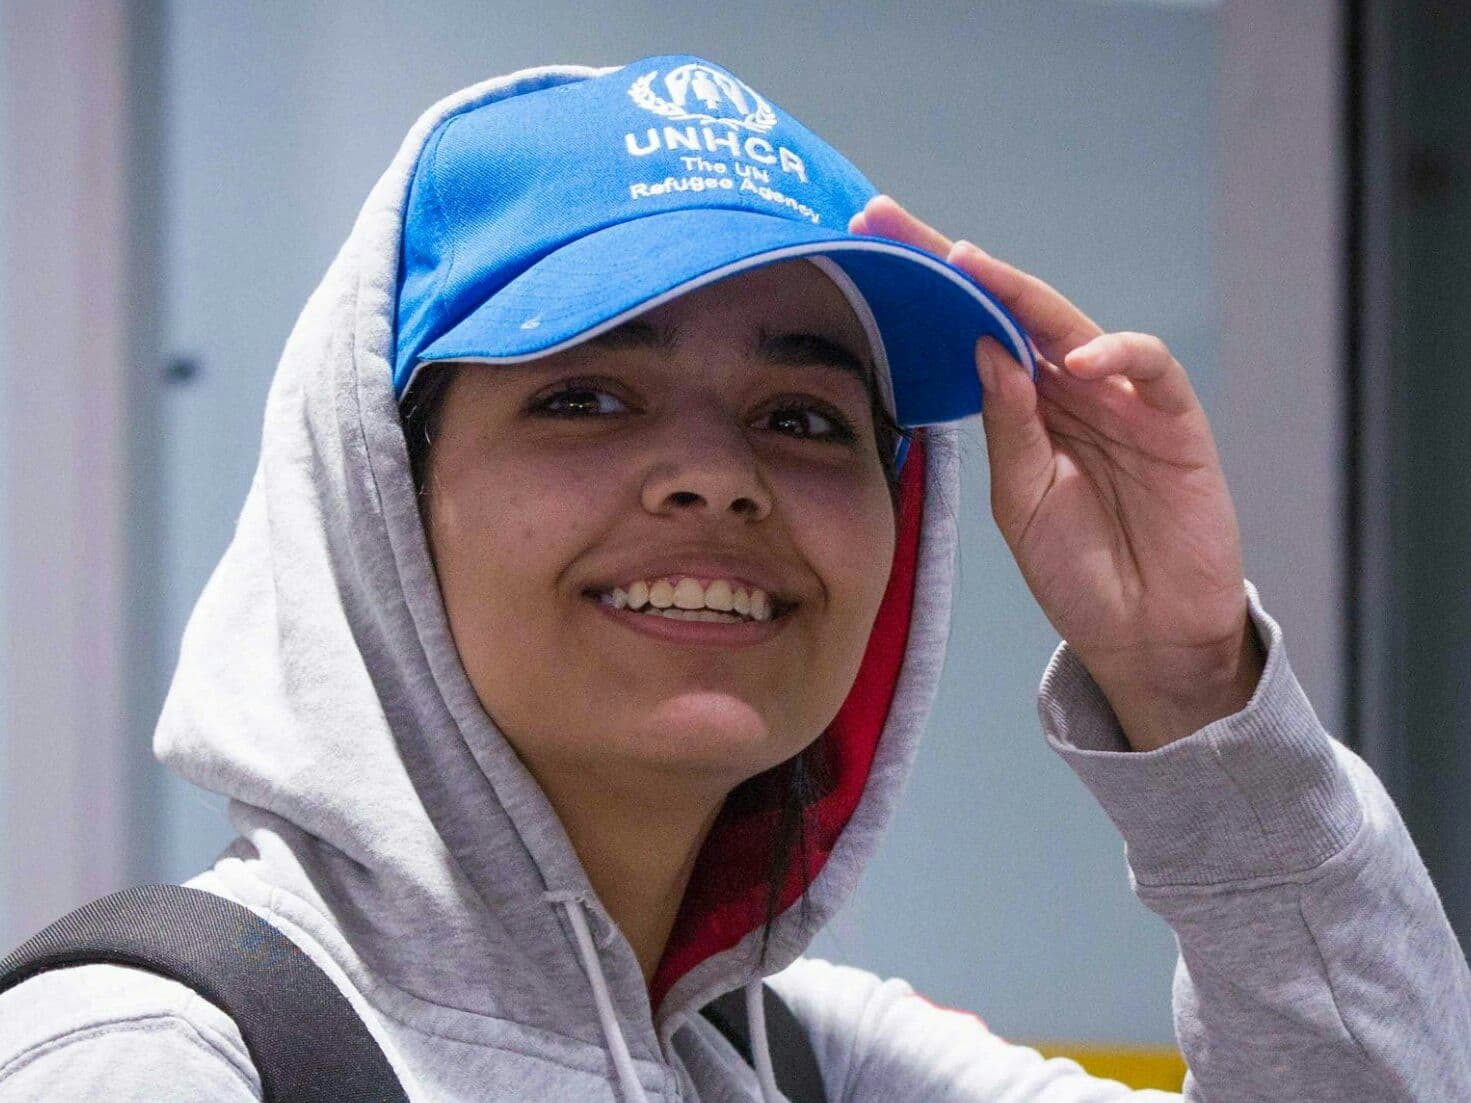 Арабка, сбежавшая из семьи в Таиланд, получила убежище в Канаде.